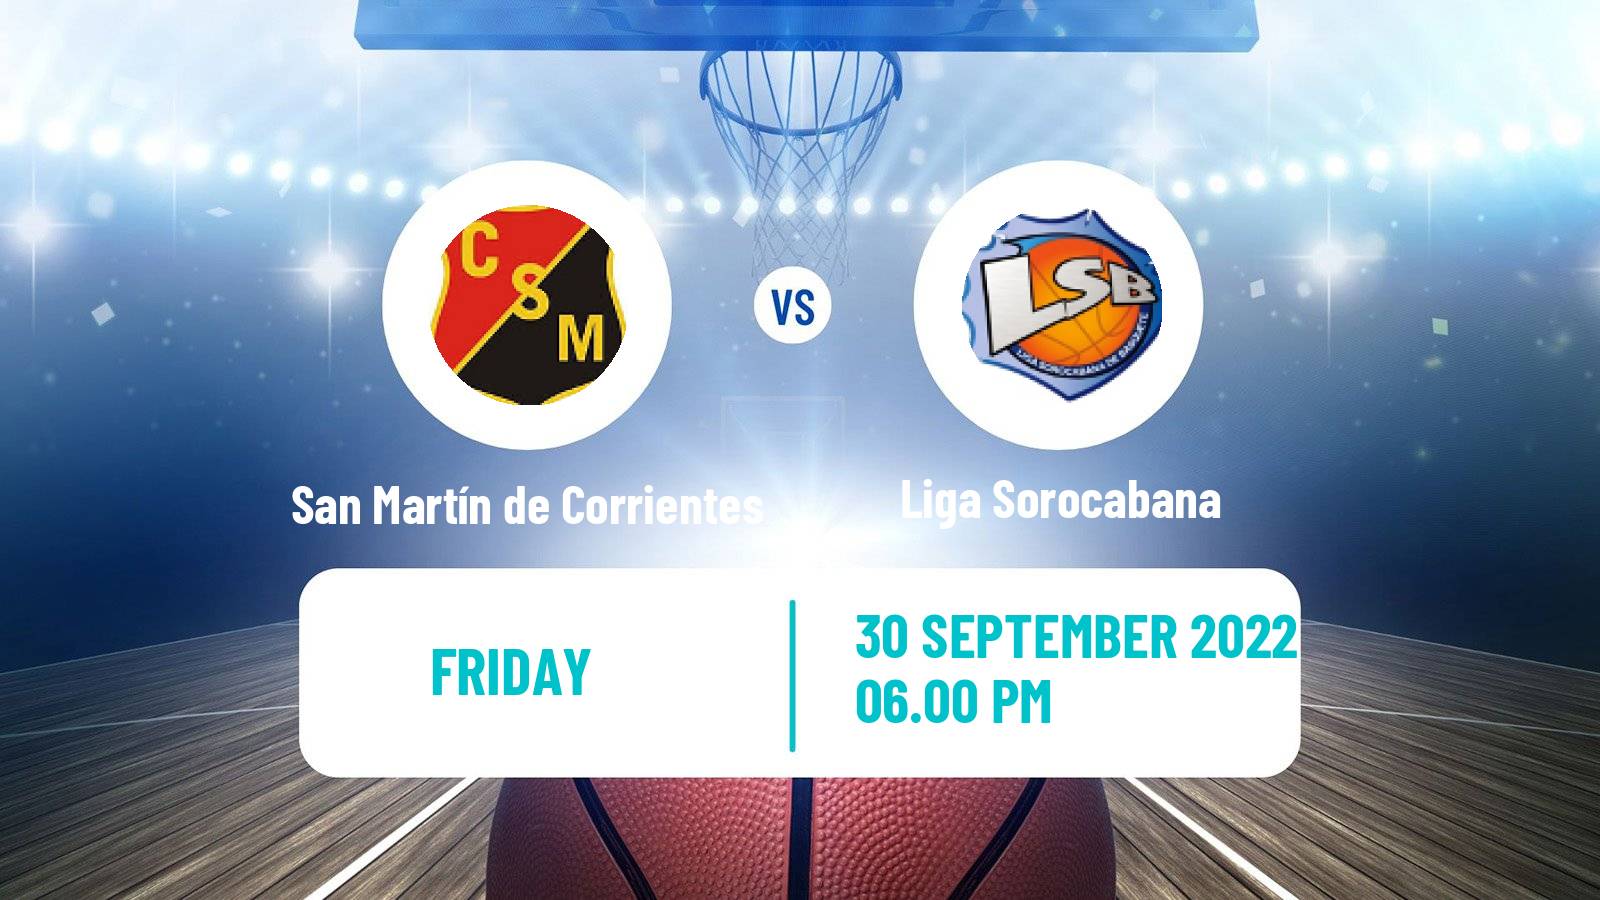 Basketball Basketball South American League San Martín de Corrientes - Liga Sorocabana